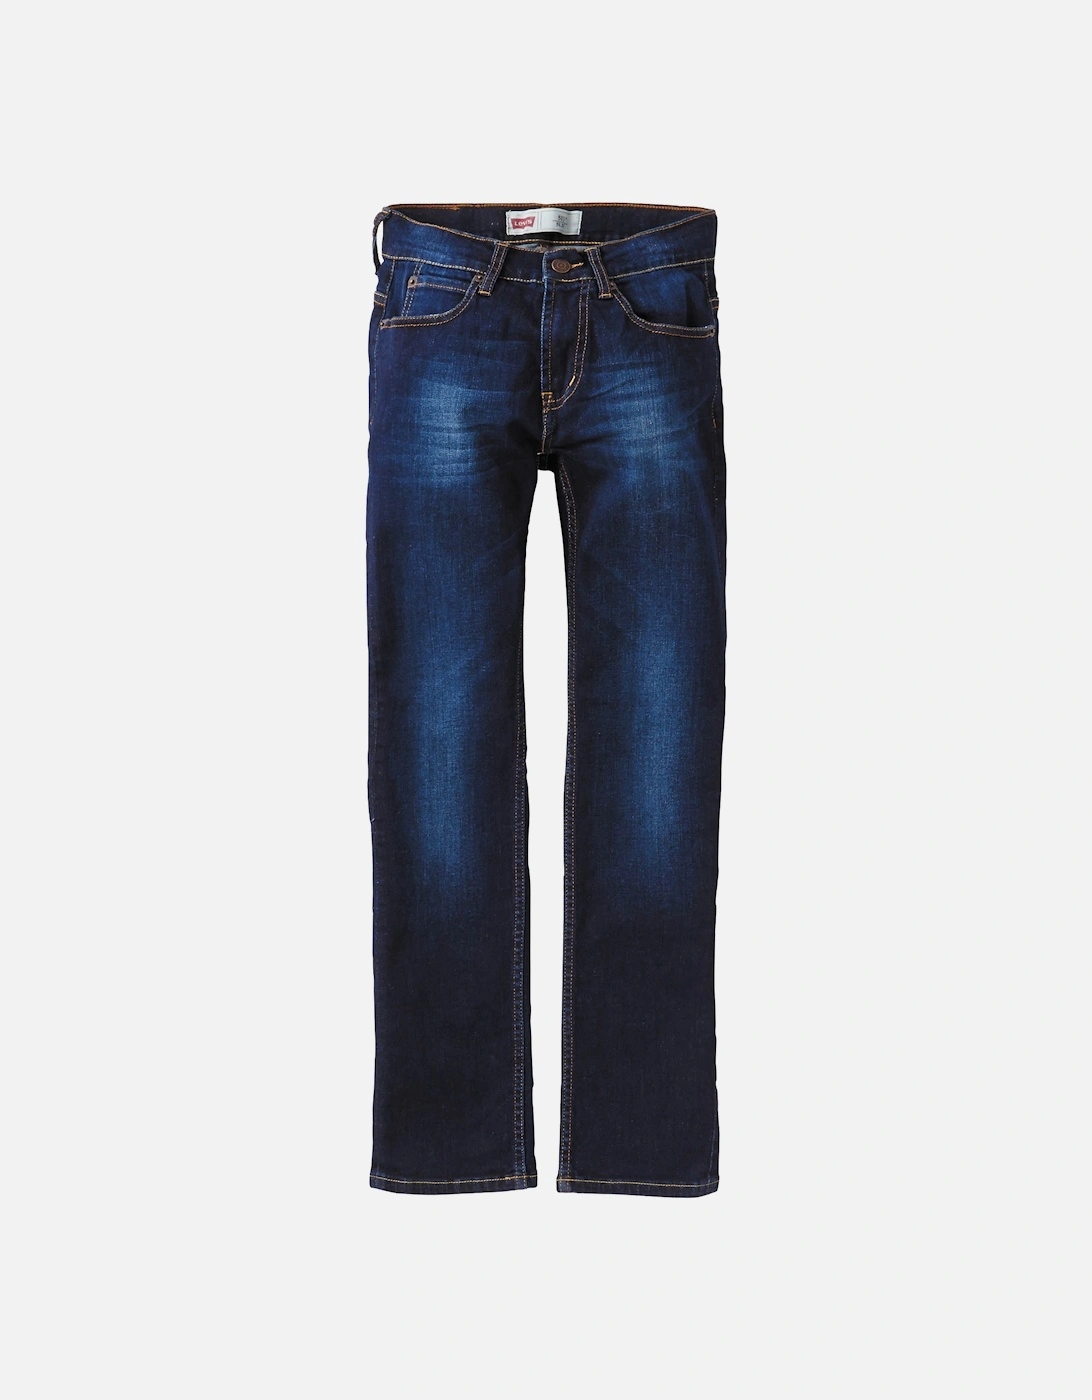 Levis Juniors 511 Slim Straight Jeans (Indigo), 3 of 2